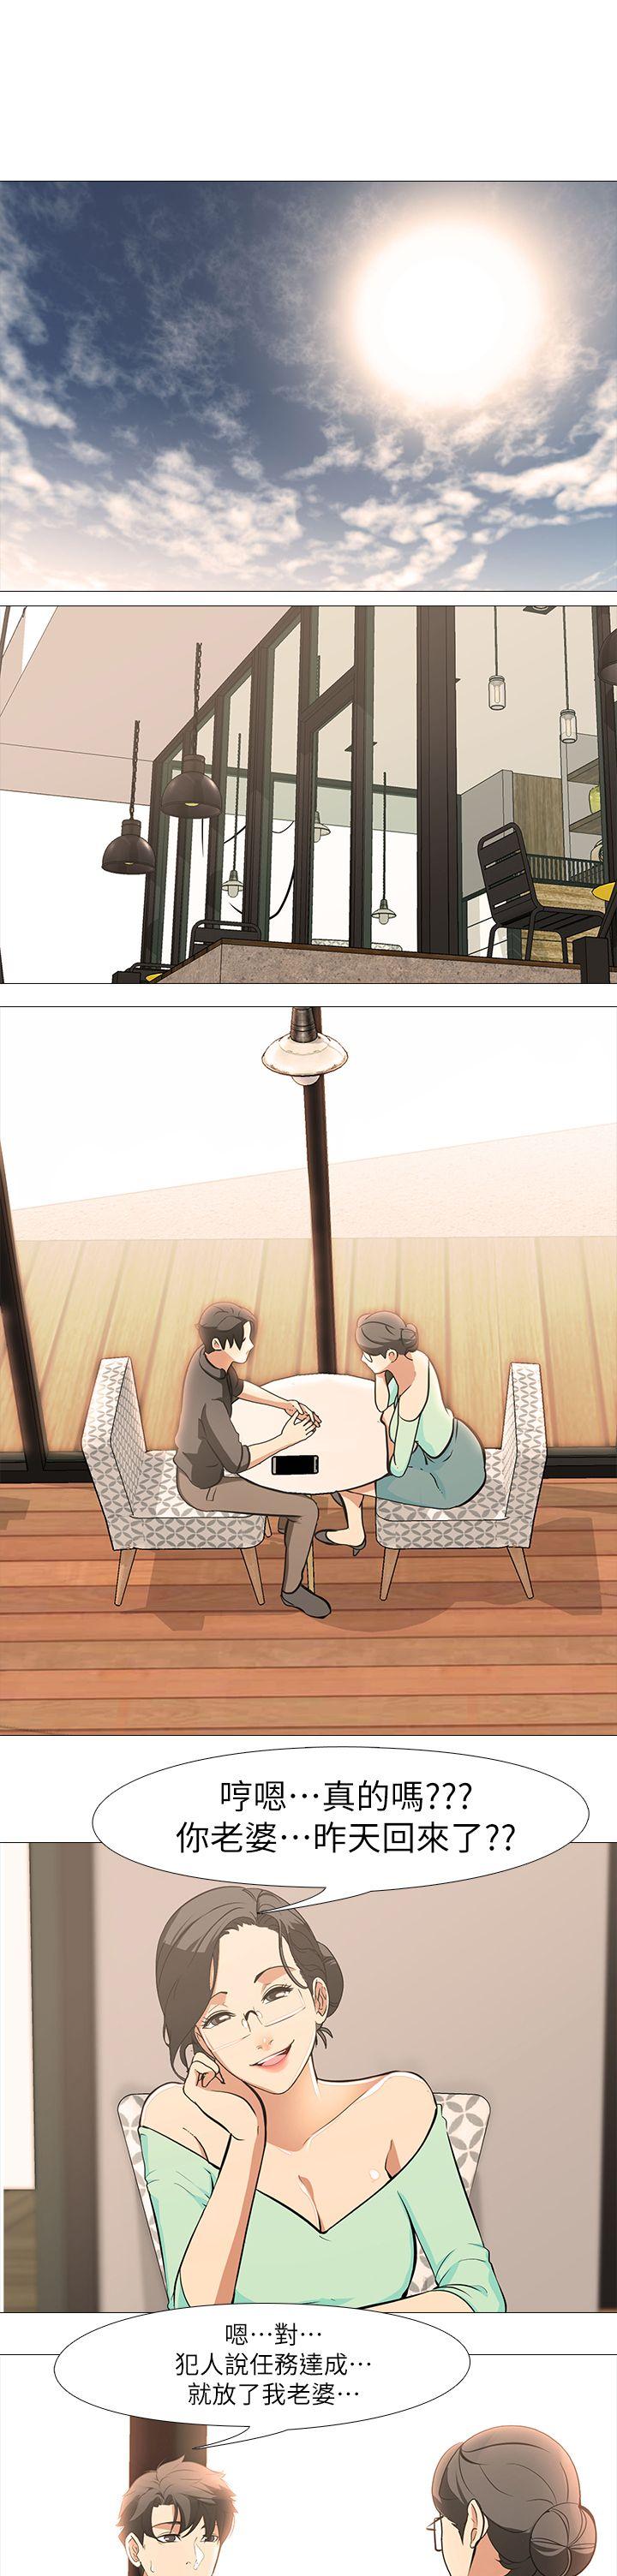 虐妻游戏  最终话-回归正常生活 漫画图片7.jpg